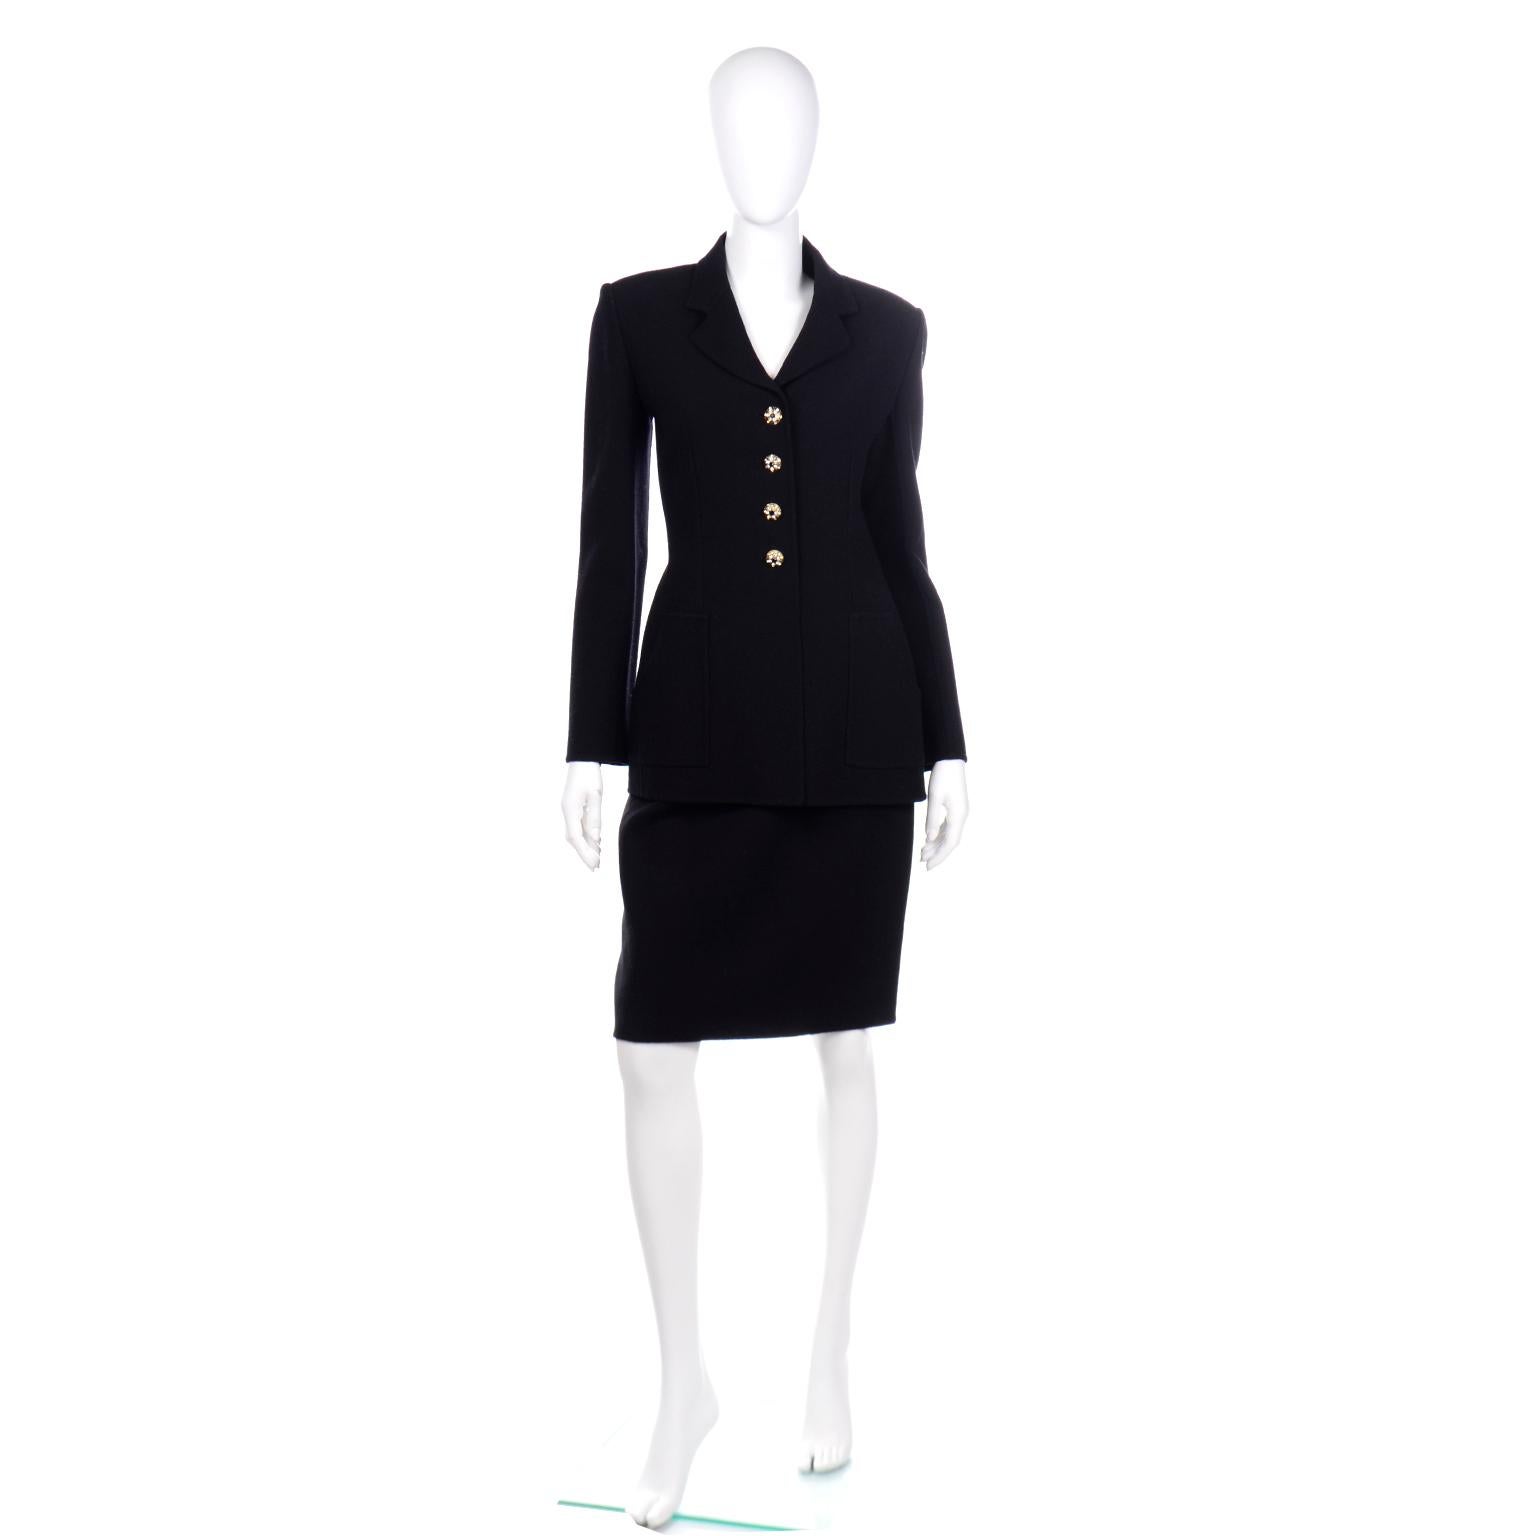 Ce ravissant costume vintage Bill Blass 2 pièces en crêpe de laine mélangé noir comprend une veste non doublée avec des boutons noirs et strass au centre du devant et une jupe droite. Ce costume léger a été acheté chez Saks Fifth Avenue dans les